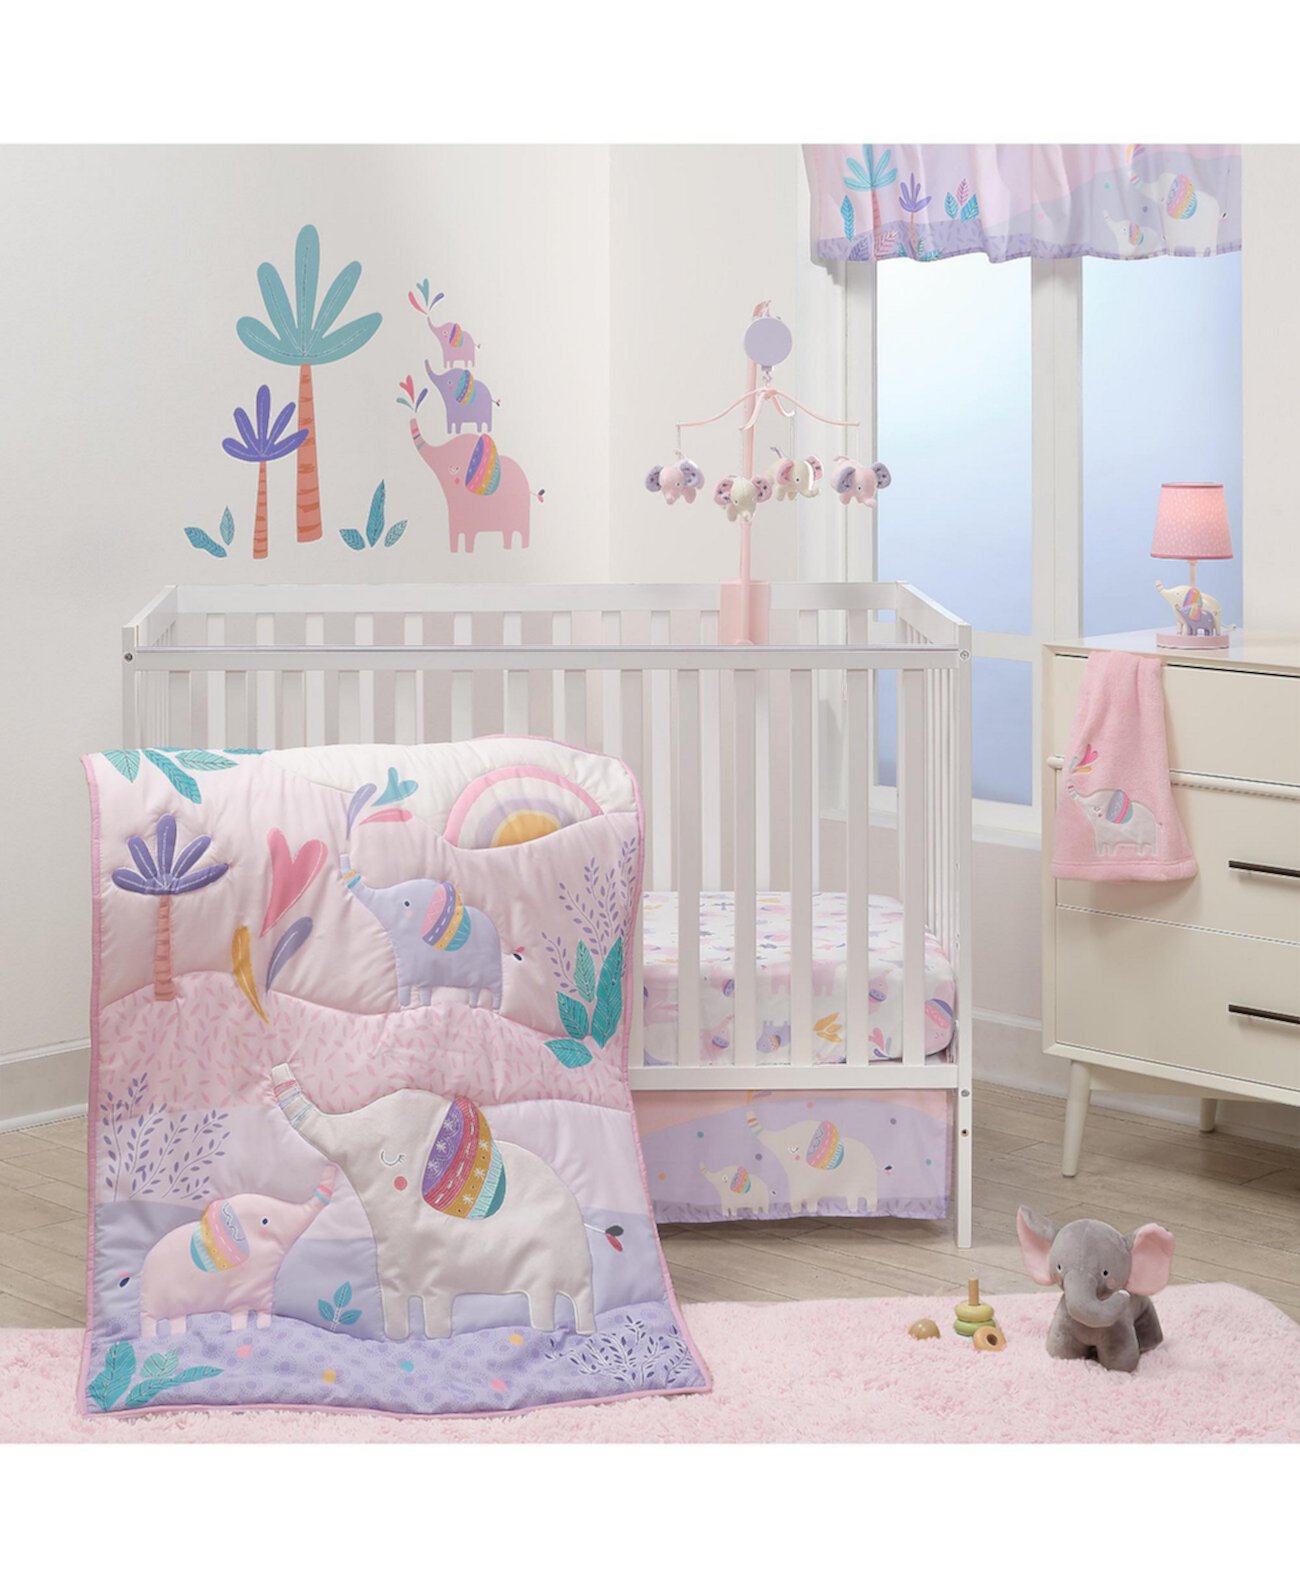 Elephant Dreams Комплект постельного белья для детской кроватки розового цвета из 3 предметов Bedtime Originals